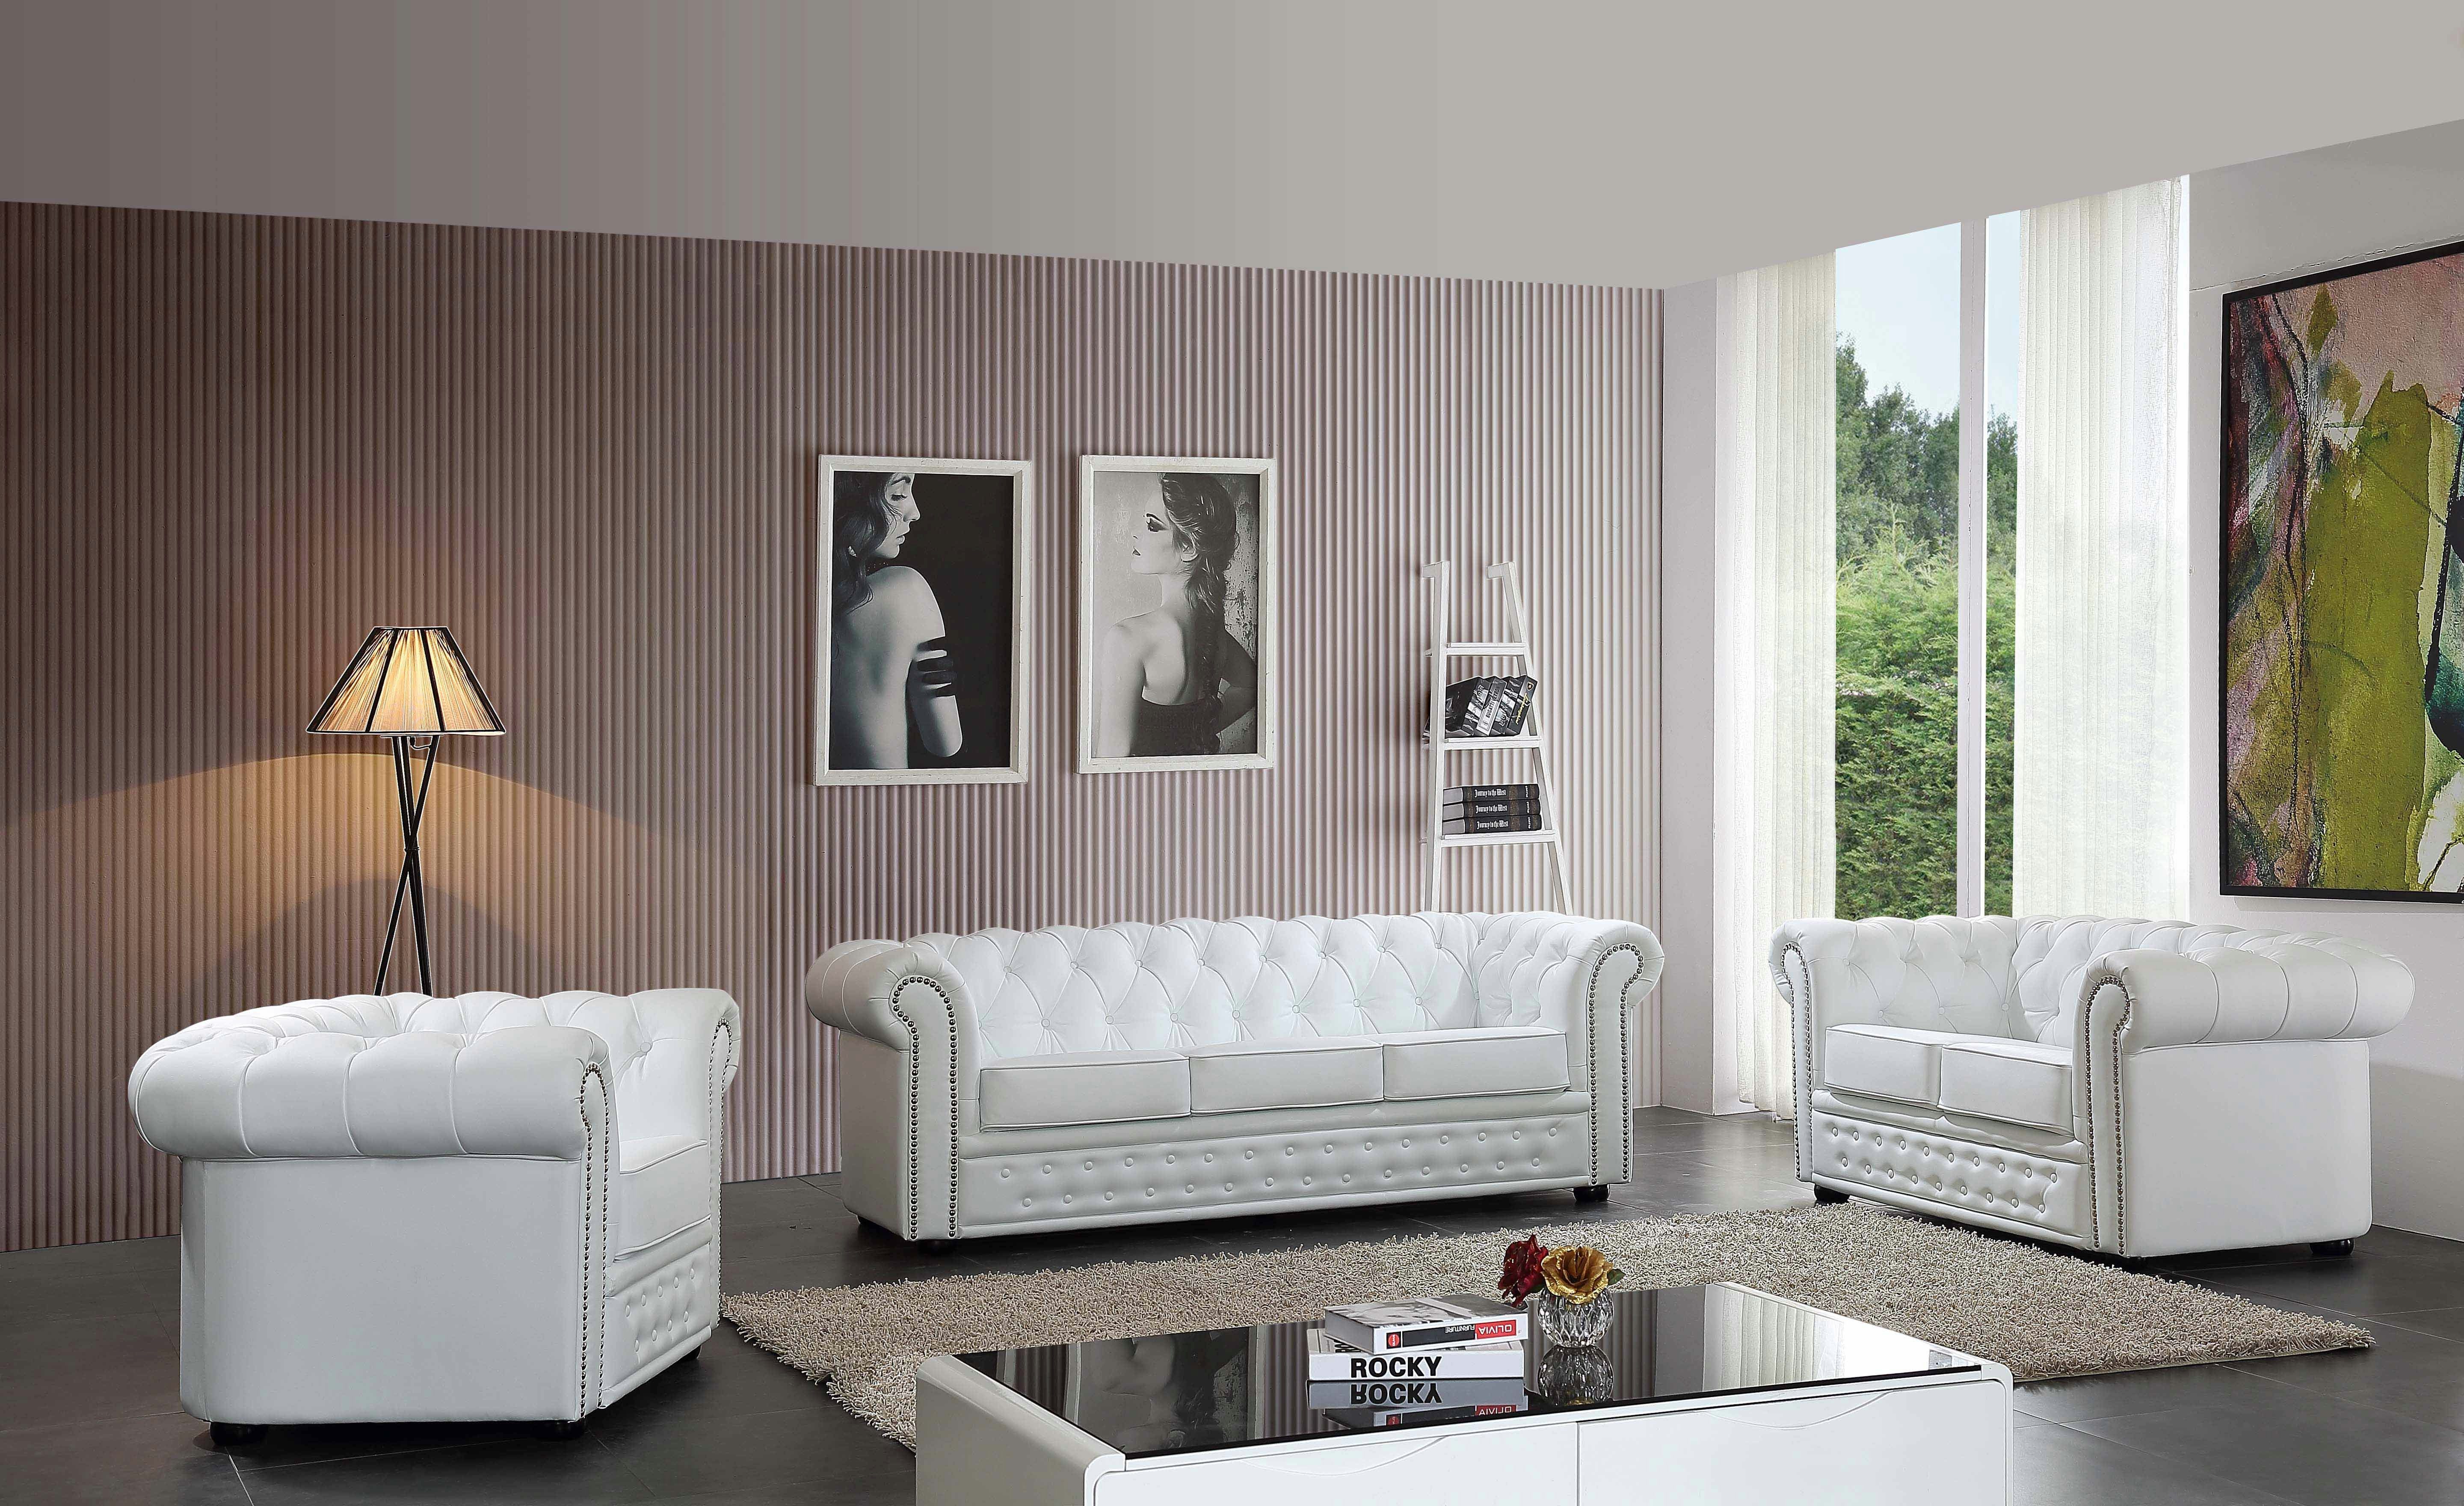 JVmoebel Sofa Chesterfield Couch Komplett Set Europe Made in Sitz Polster Leder, Garnitur